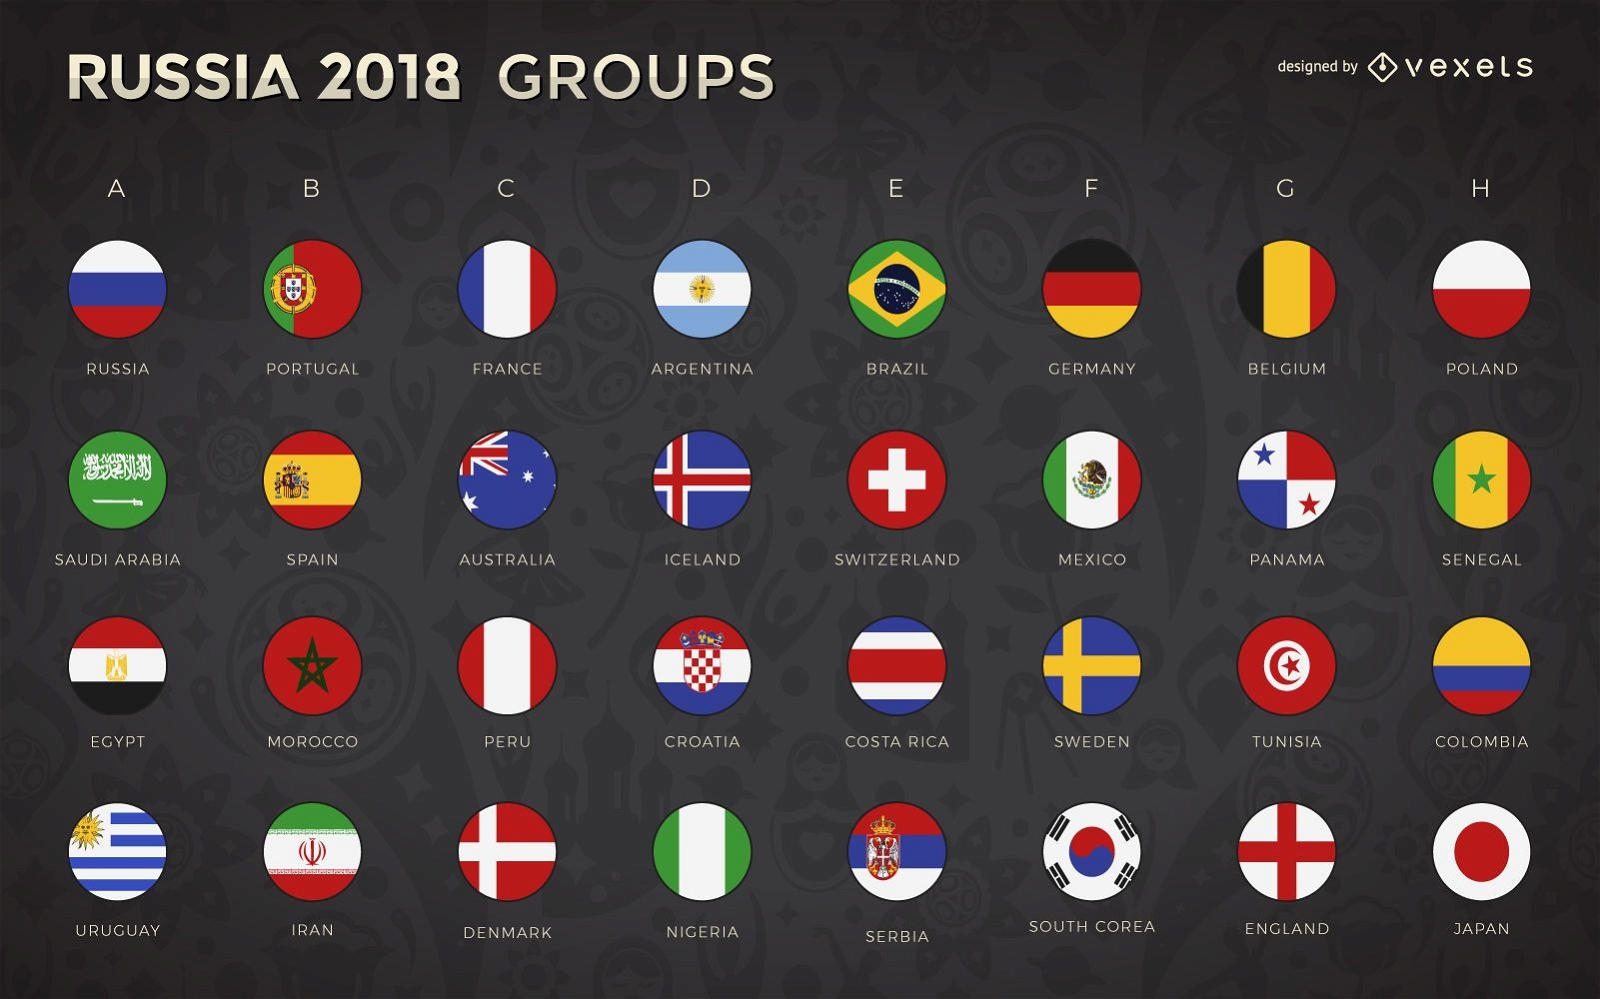 Banderas y grupos de la Copa Mundial Rusia 2018